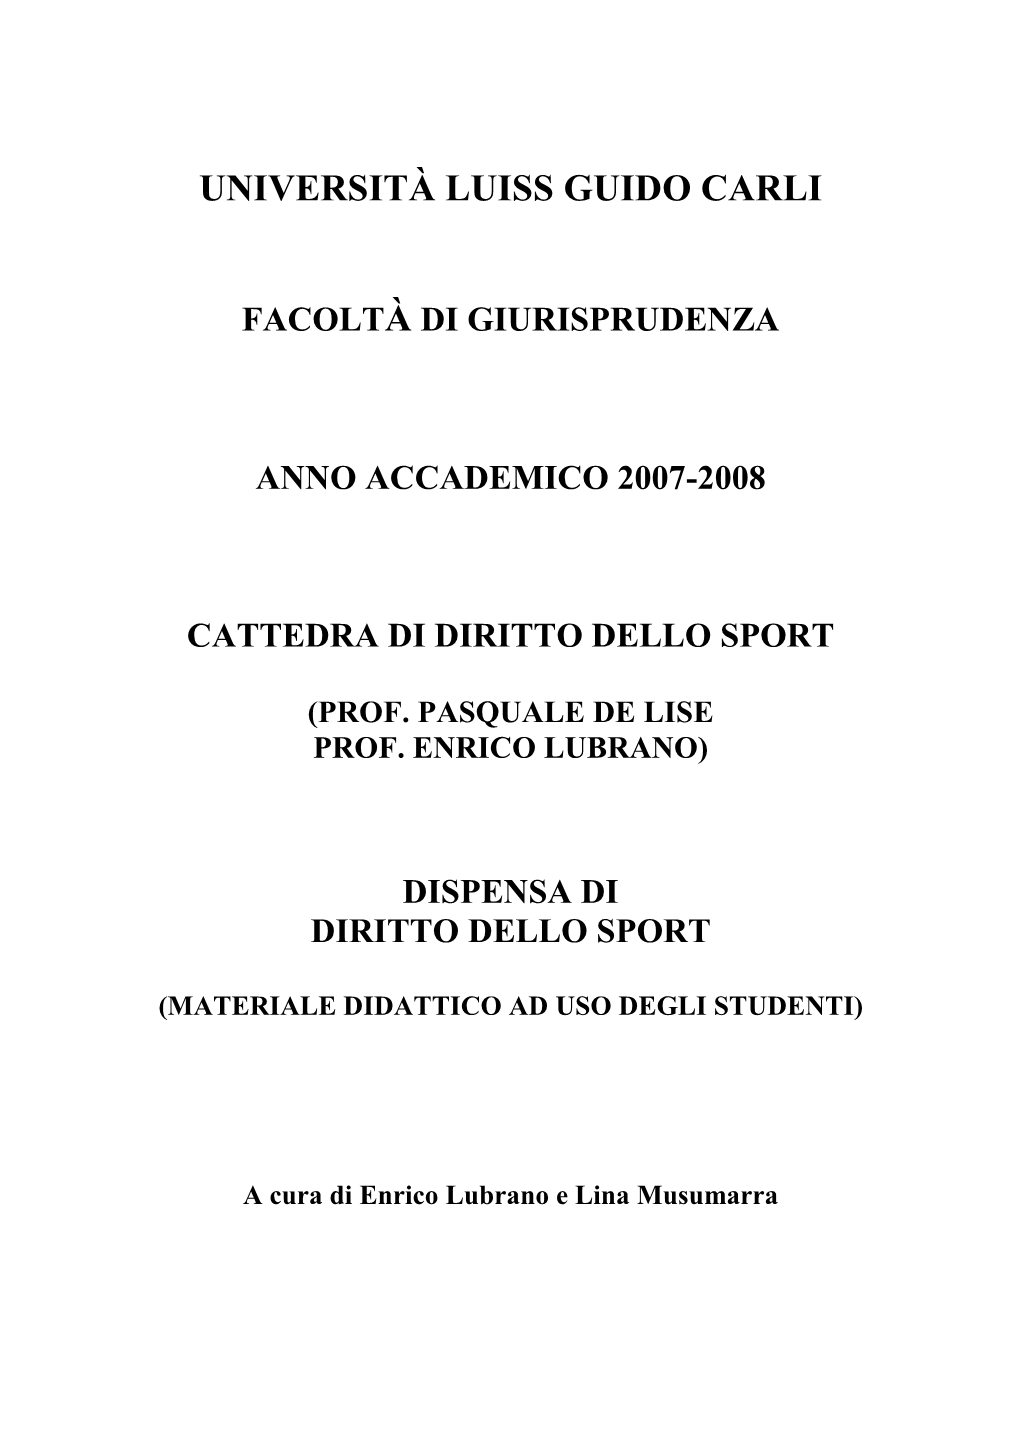 Diritto Dello Sport 2007-2008 – Dispensa